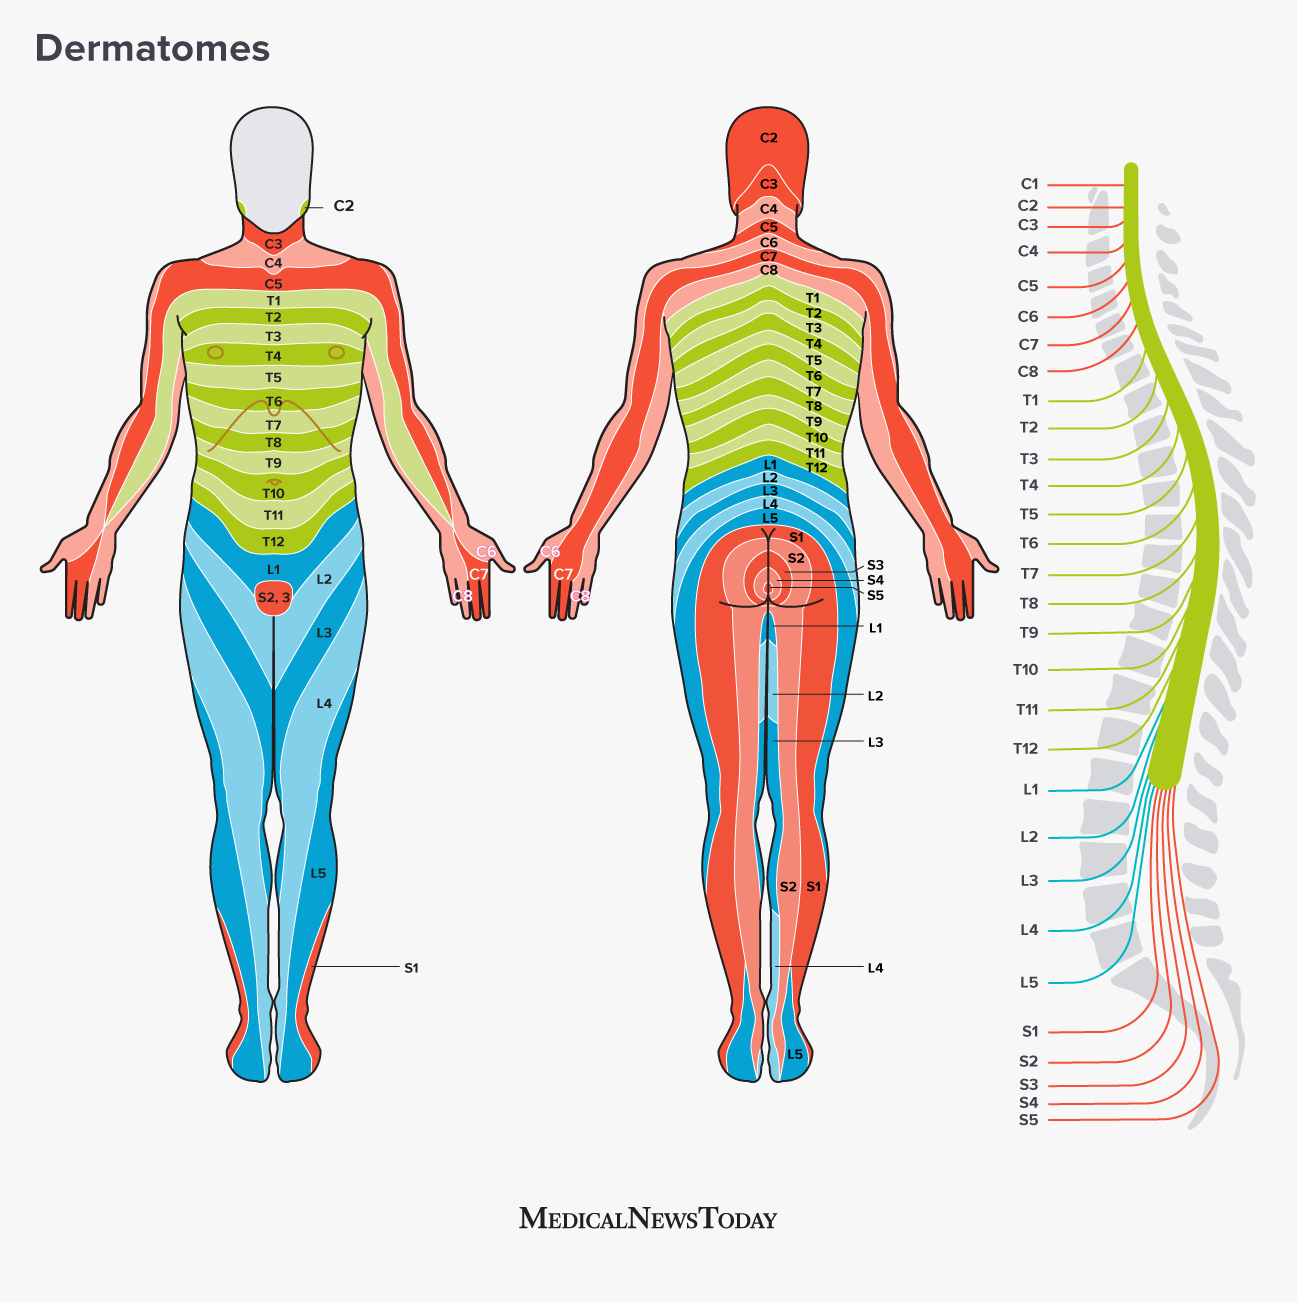 C3 Dermatome Map Dermatome Map